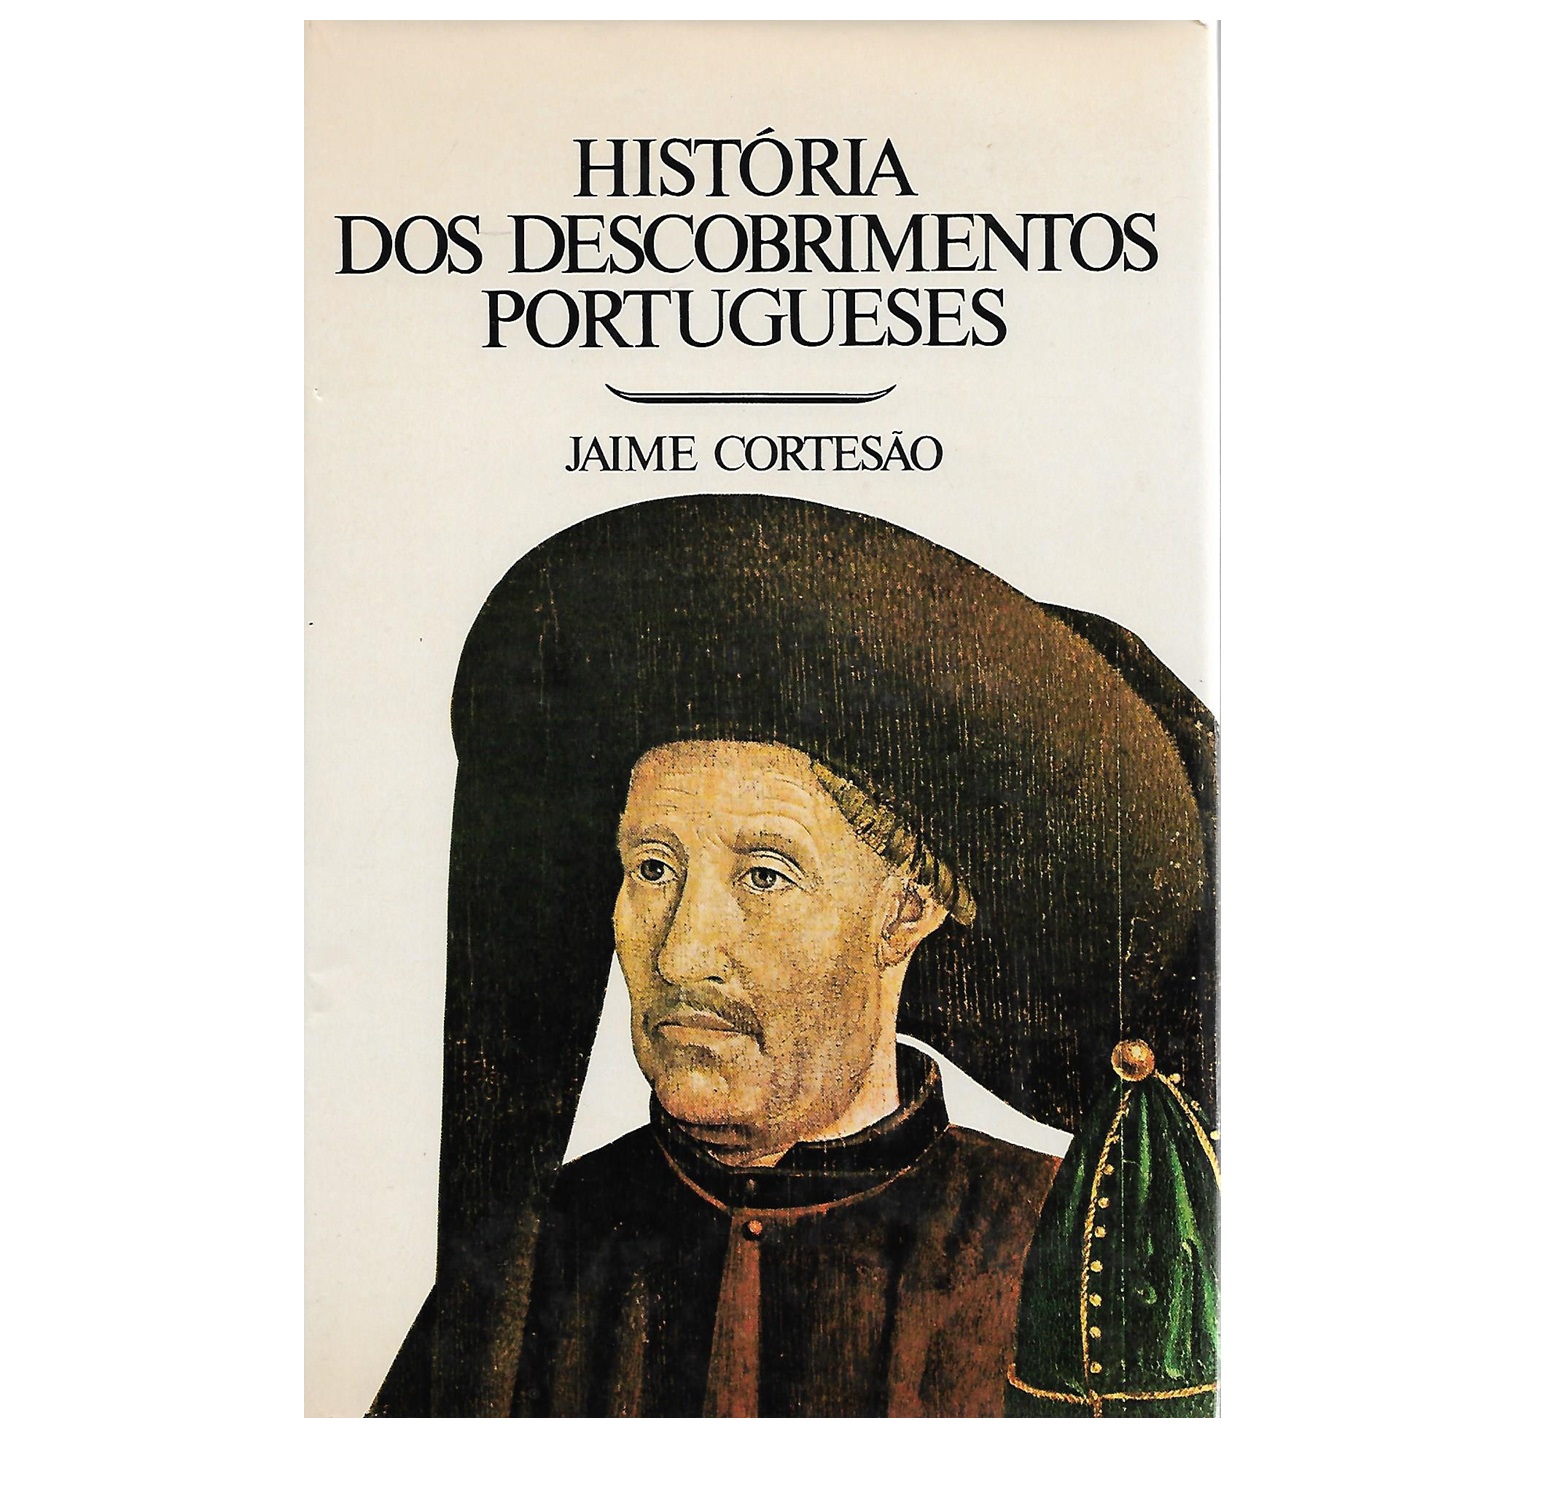 HISTÓRIA DOS DESCOBRIMENTOS PORTUGUESES